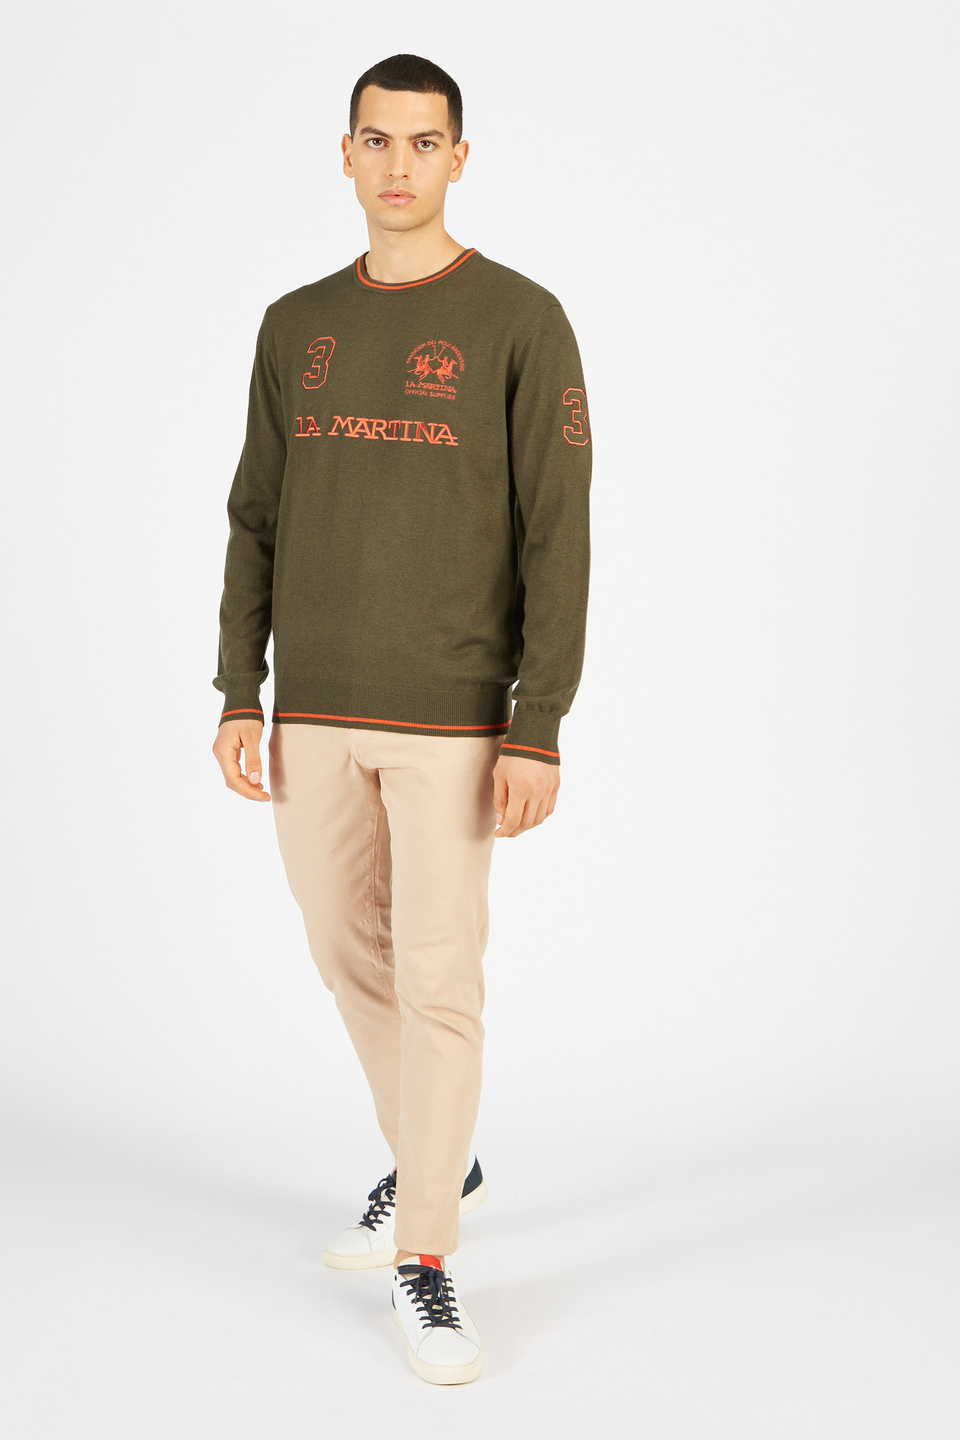 Maglione tricot da uomo in lambscot girocollo regular fit | La Martina - Official Online Shop